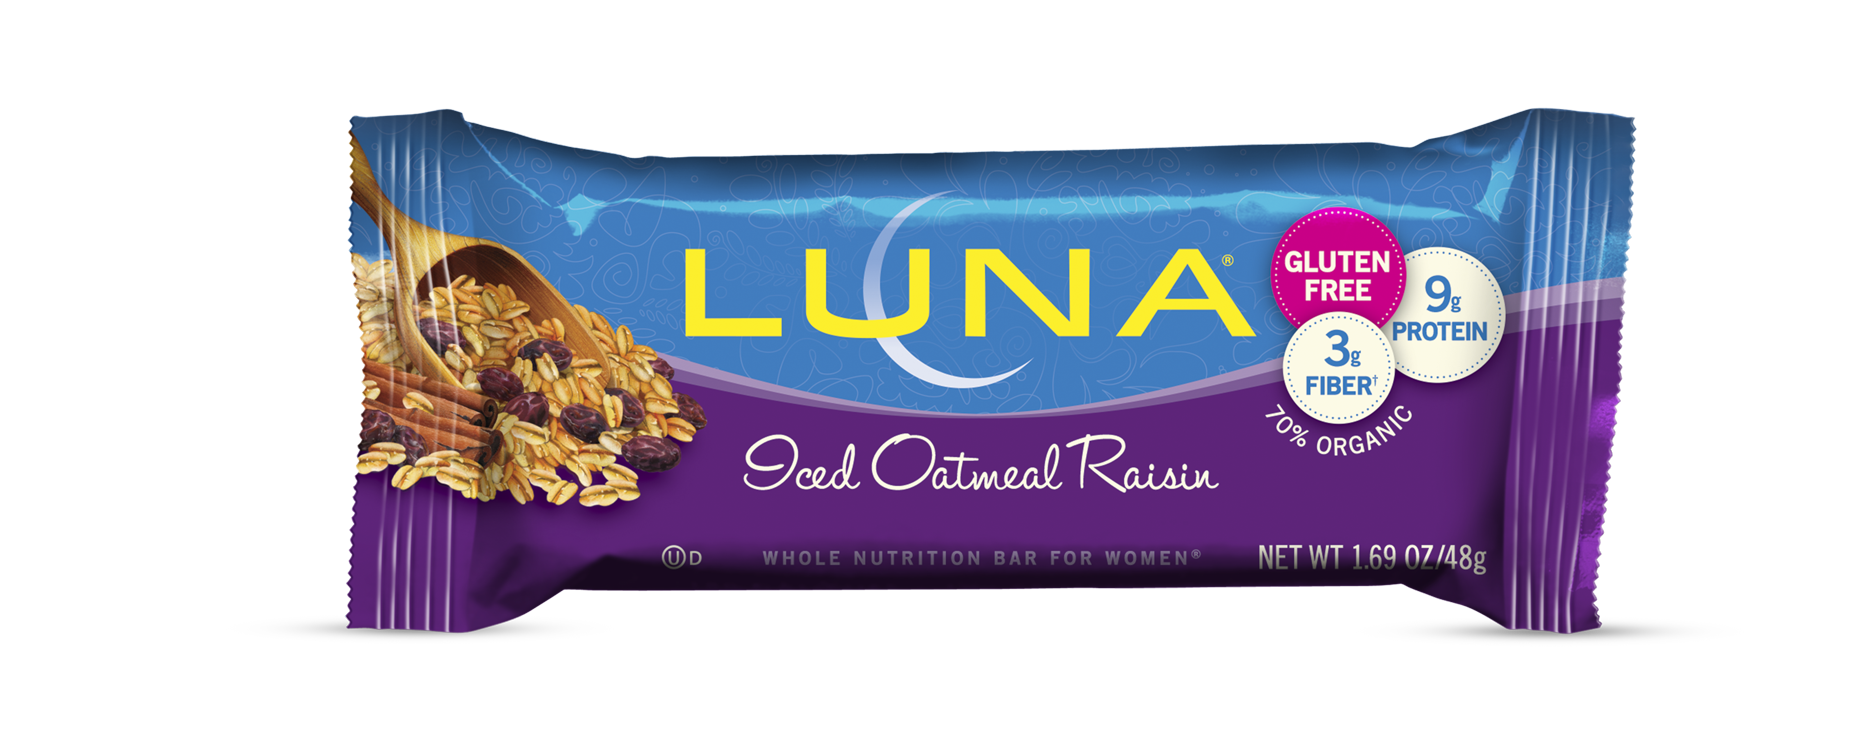 Luna Iced Oatmeal Raisin